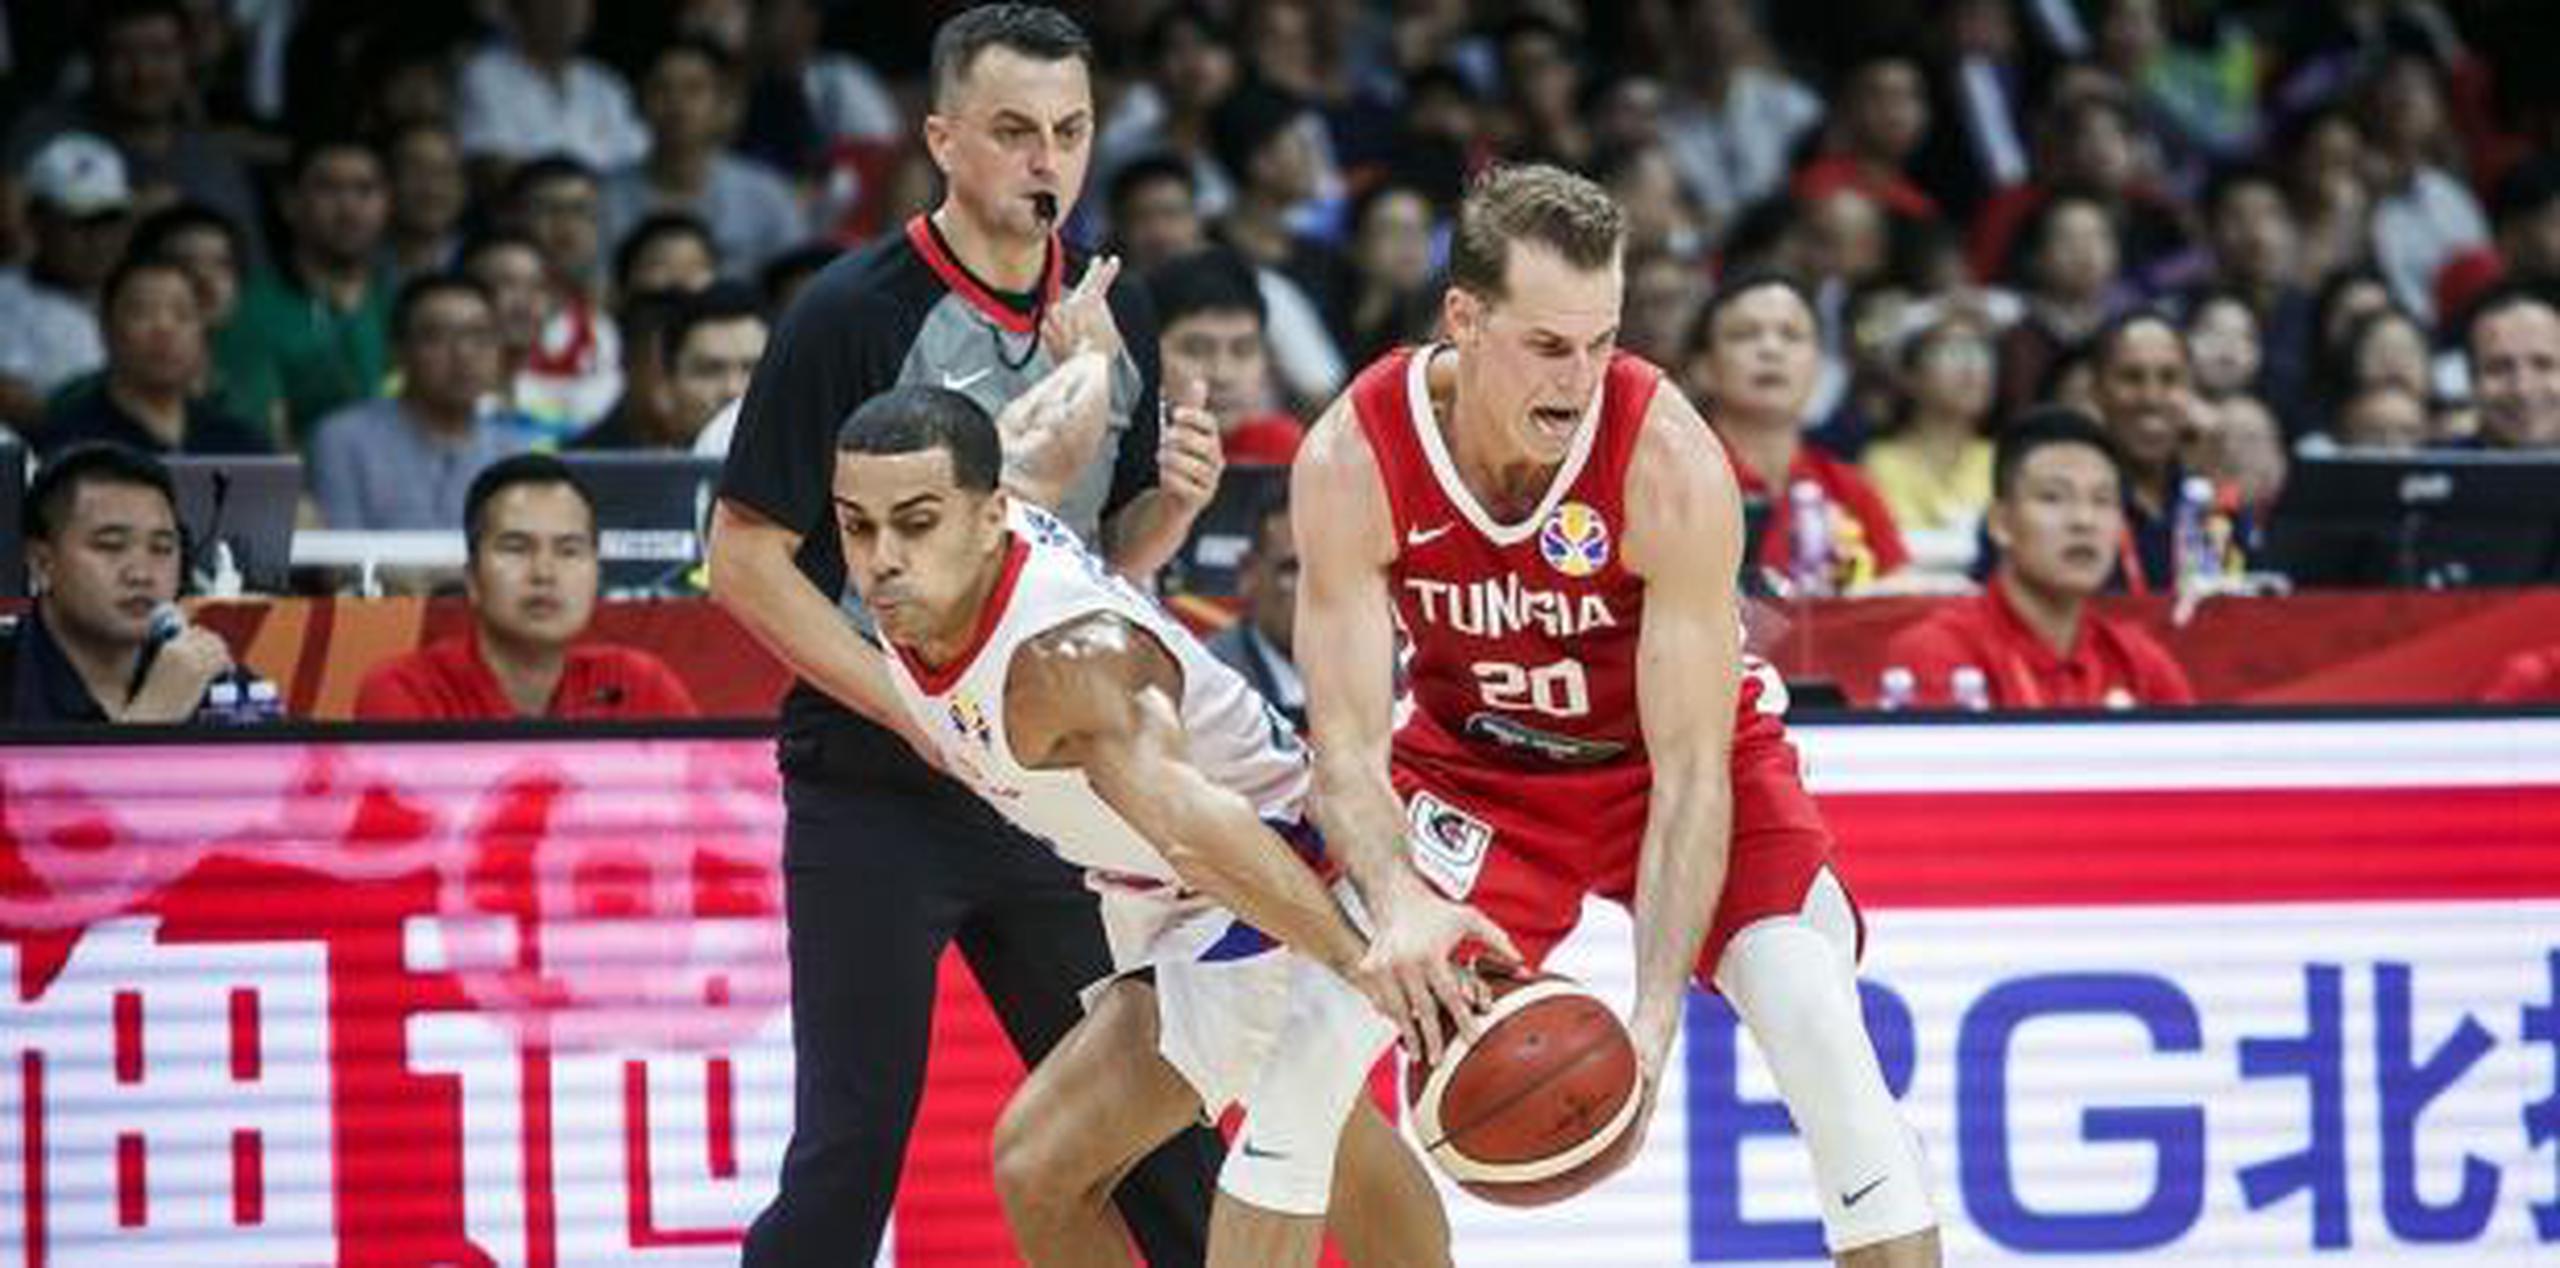 Ángel Rodríguez trata de sacarle la bola de las manos a Michael Roll, de Túnez. (FIBA)